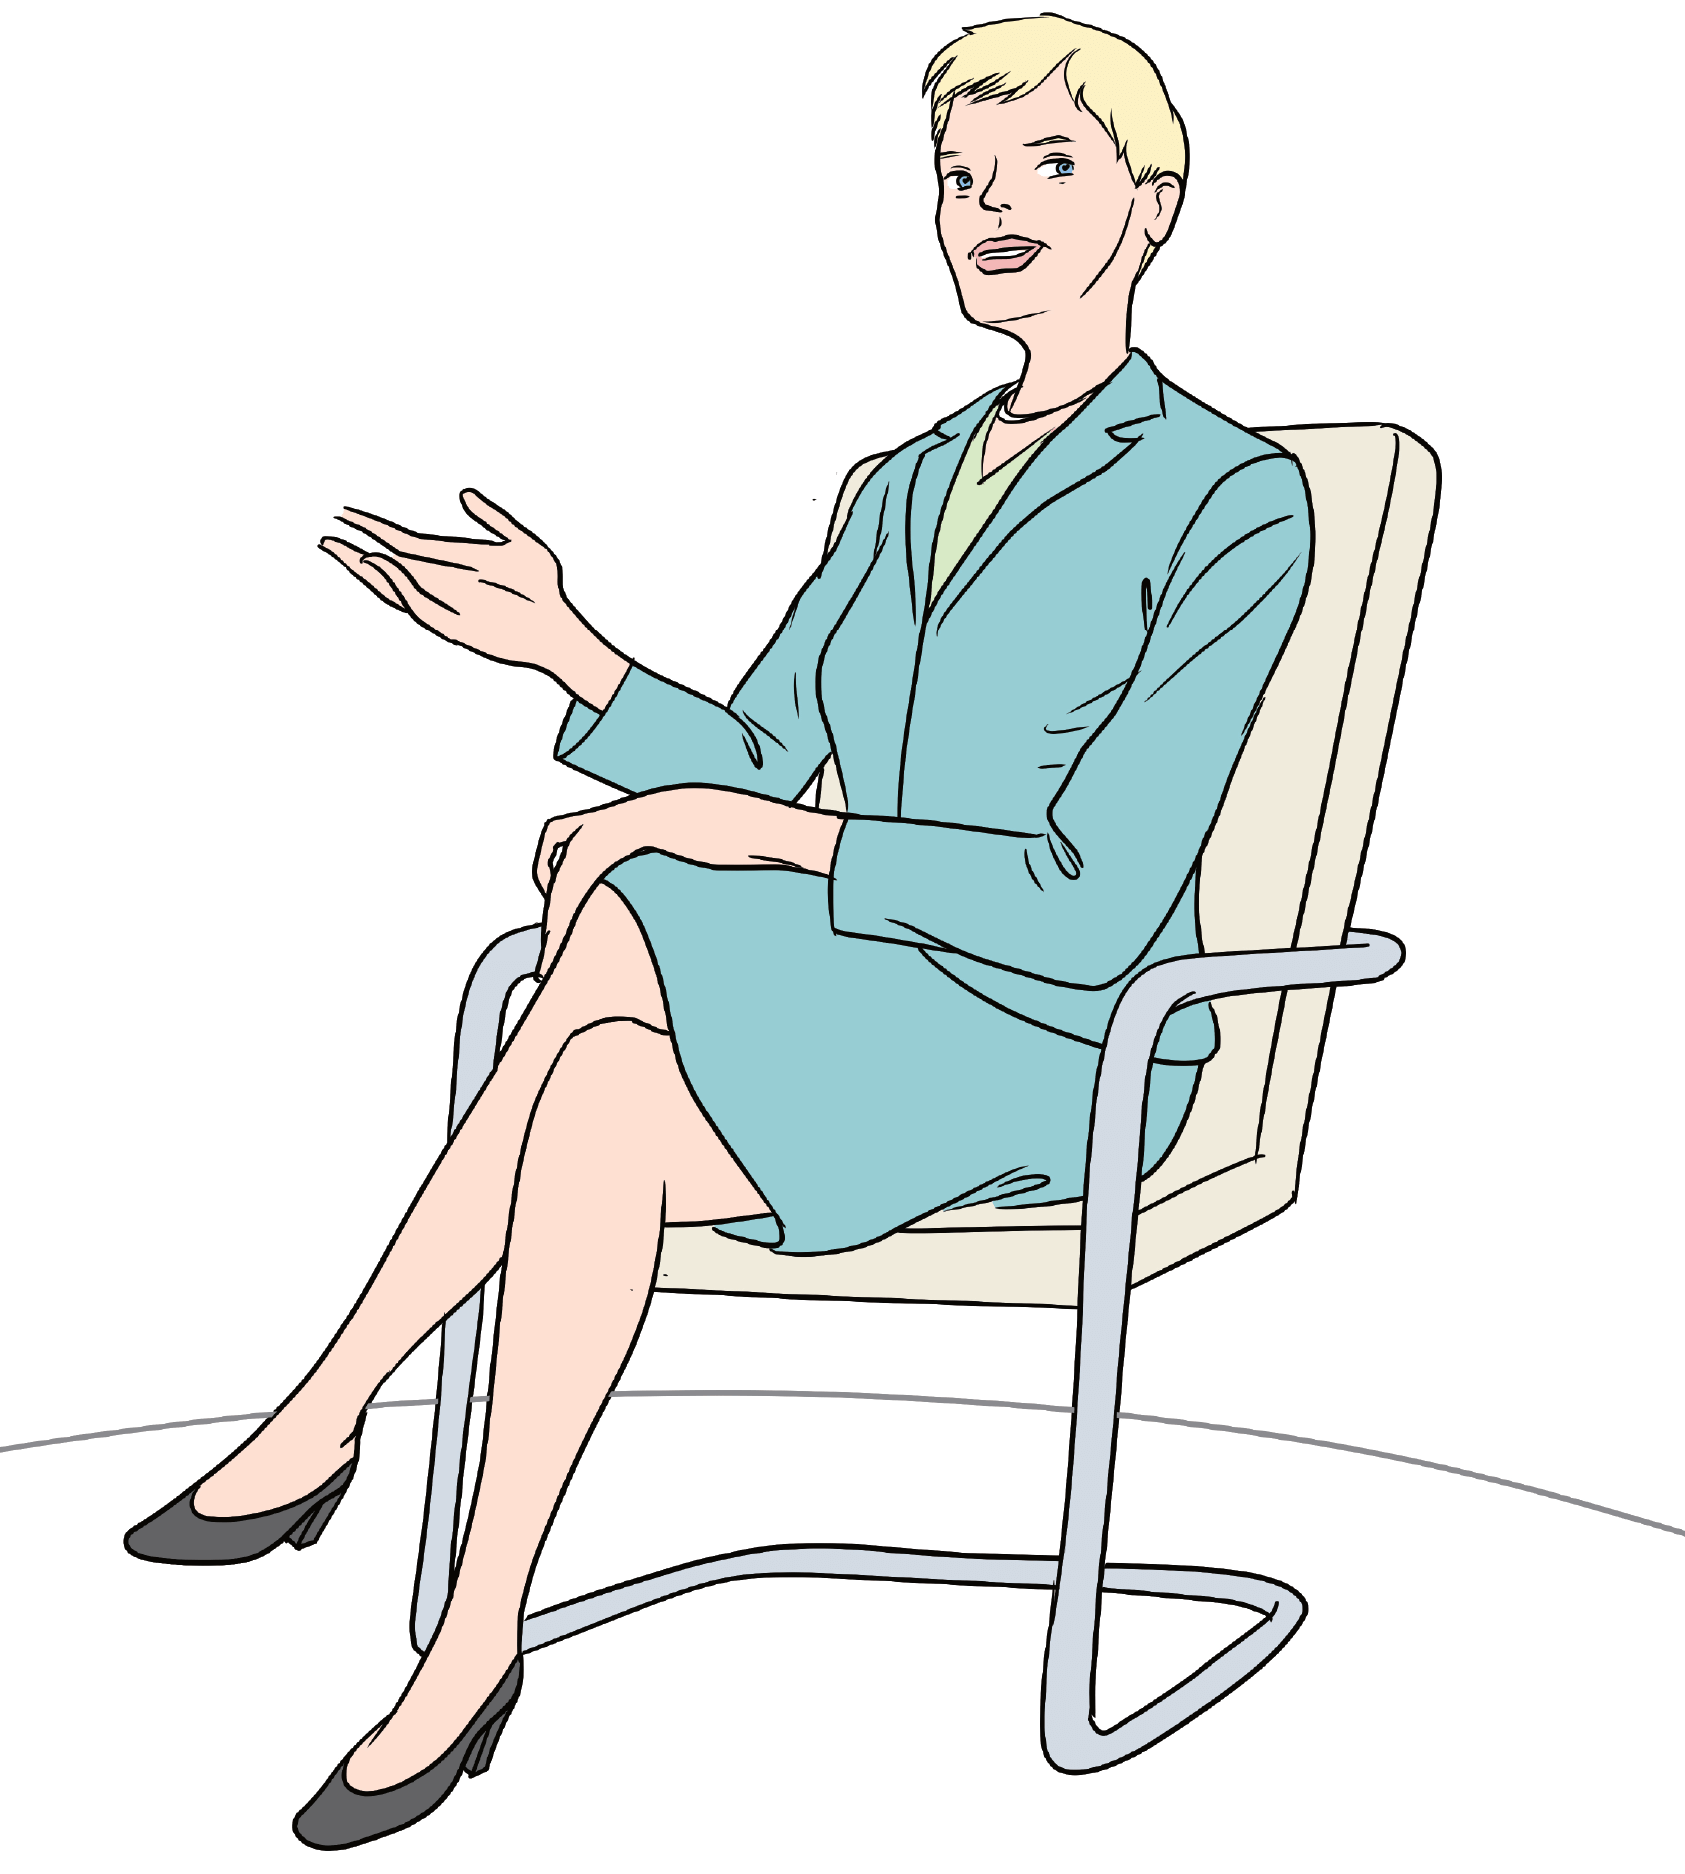 Eine Abgeordnete des Europäischem Parlaments sitz auf einem Sessel. Sie spricht und gestikuliert mit der einen Hand. Sie trägt Business-Kleidung.